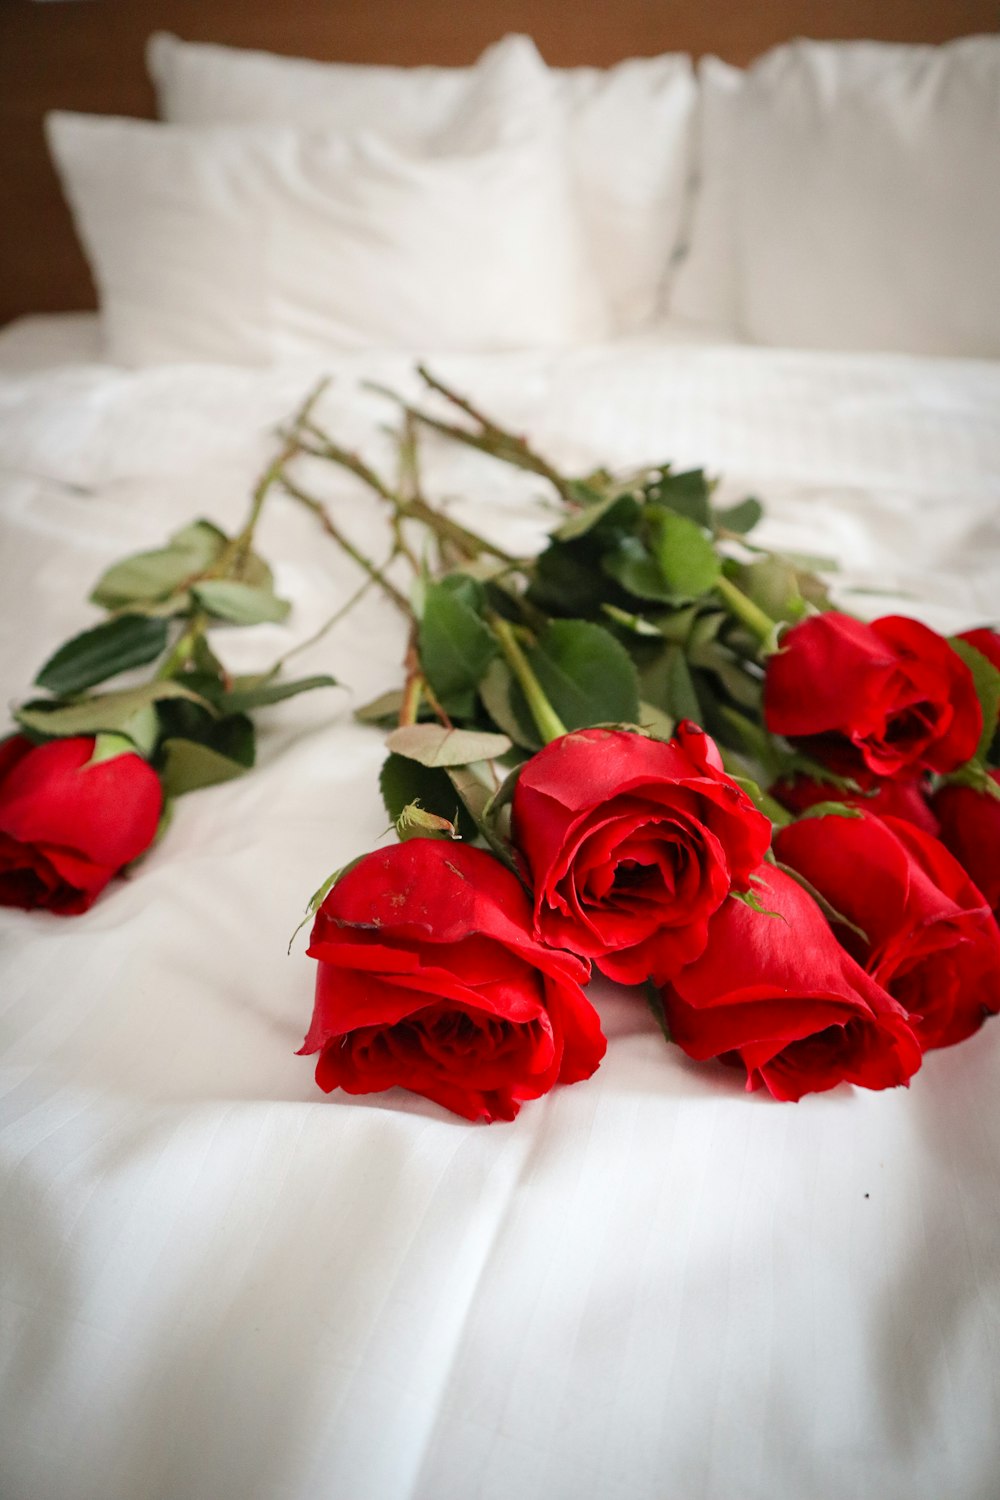 ベッドの上に横たわる赤いバラの束